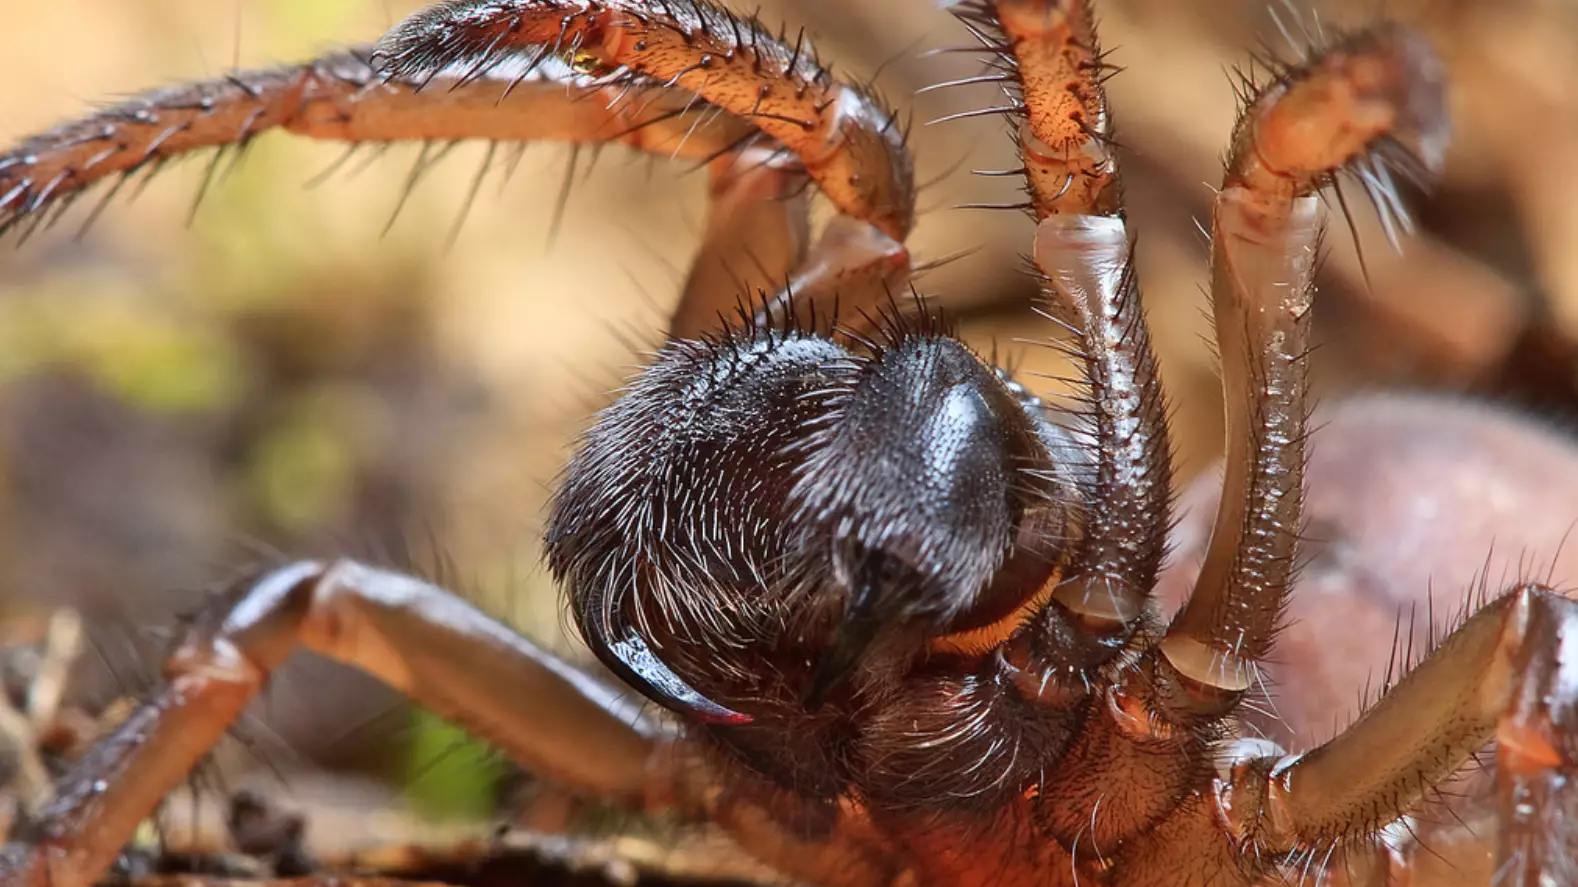 World's Oldest Spider Dies Aged 43